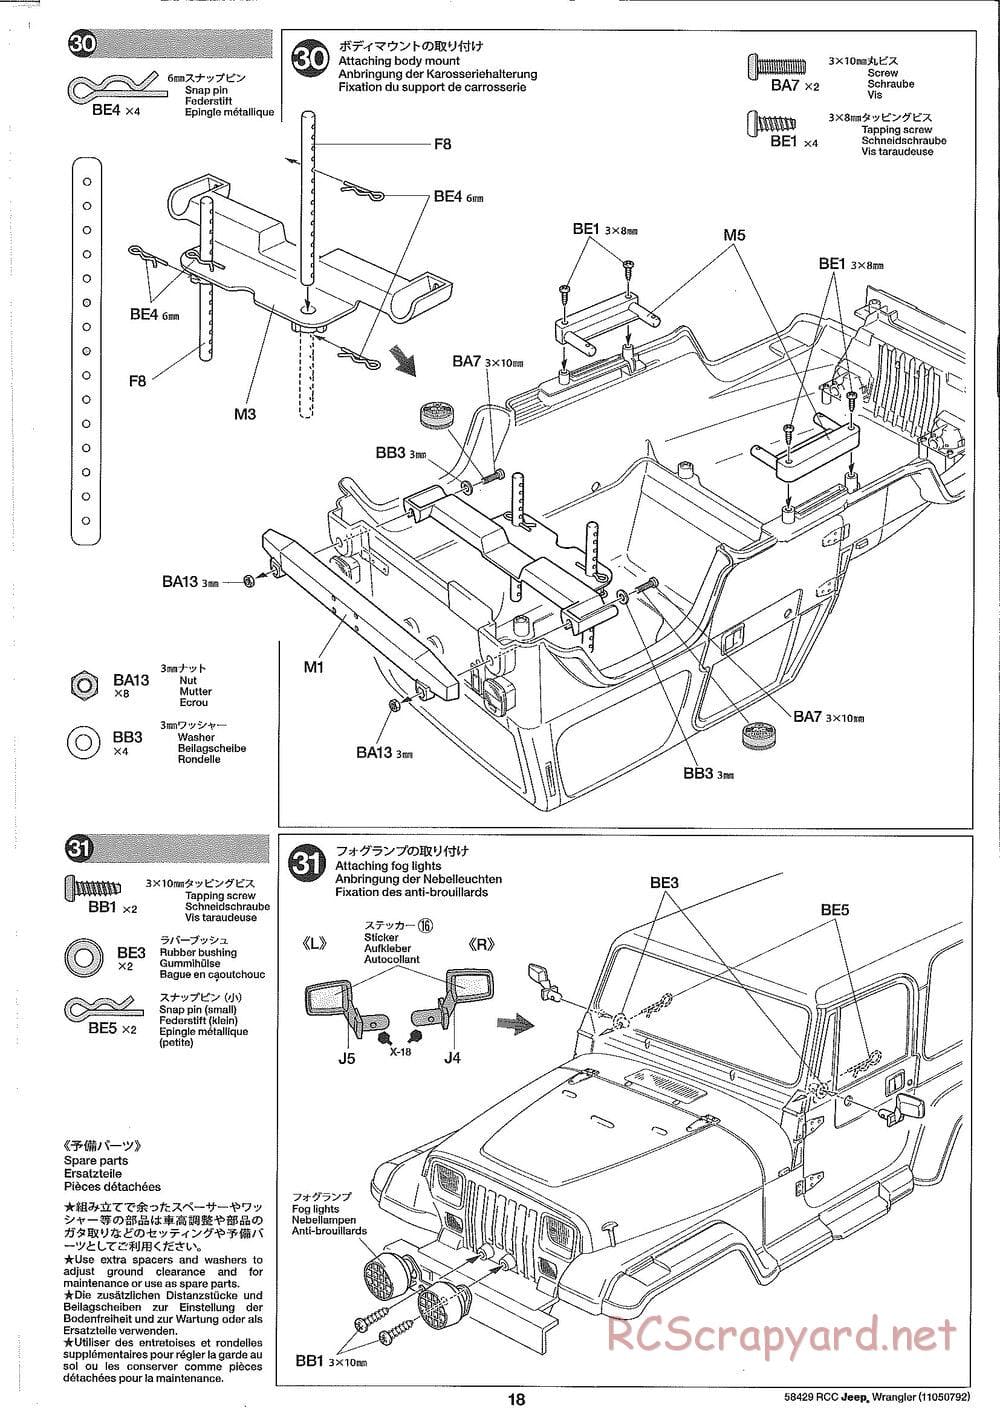 Tamiya - Jeep Wrangler - CR-01 Chassis - Manual - Page 18